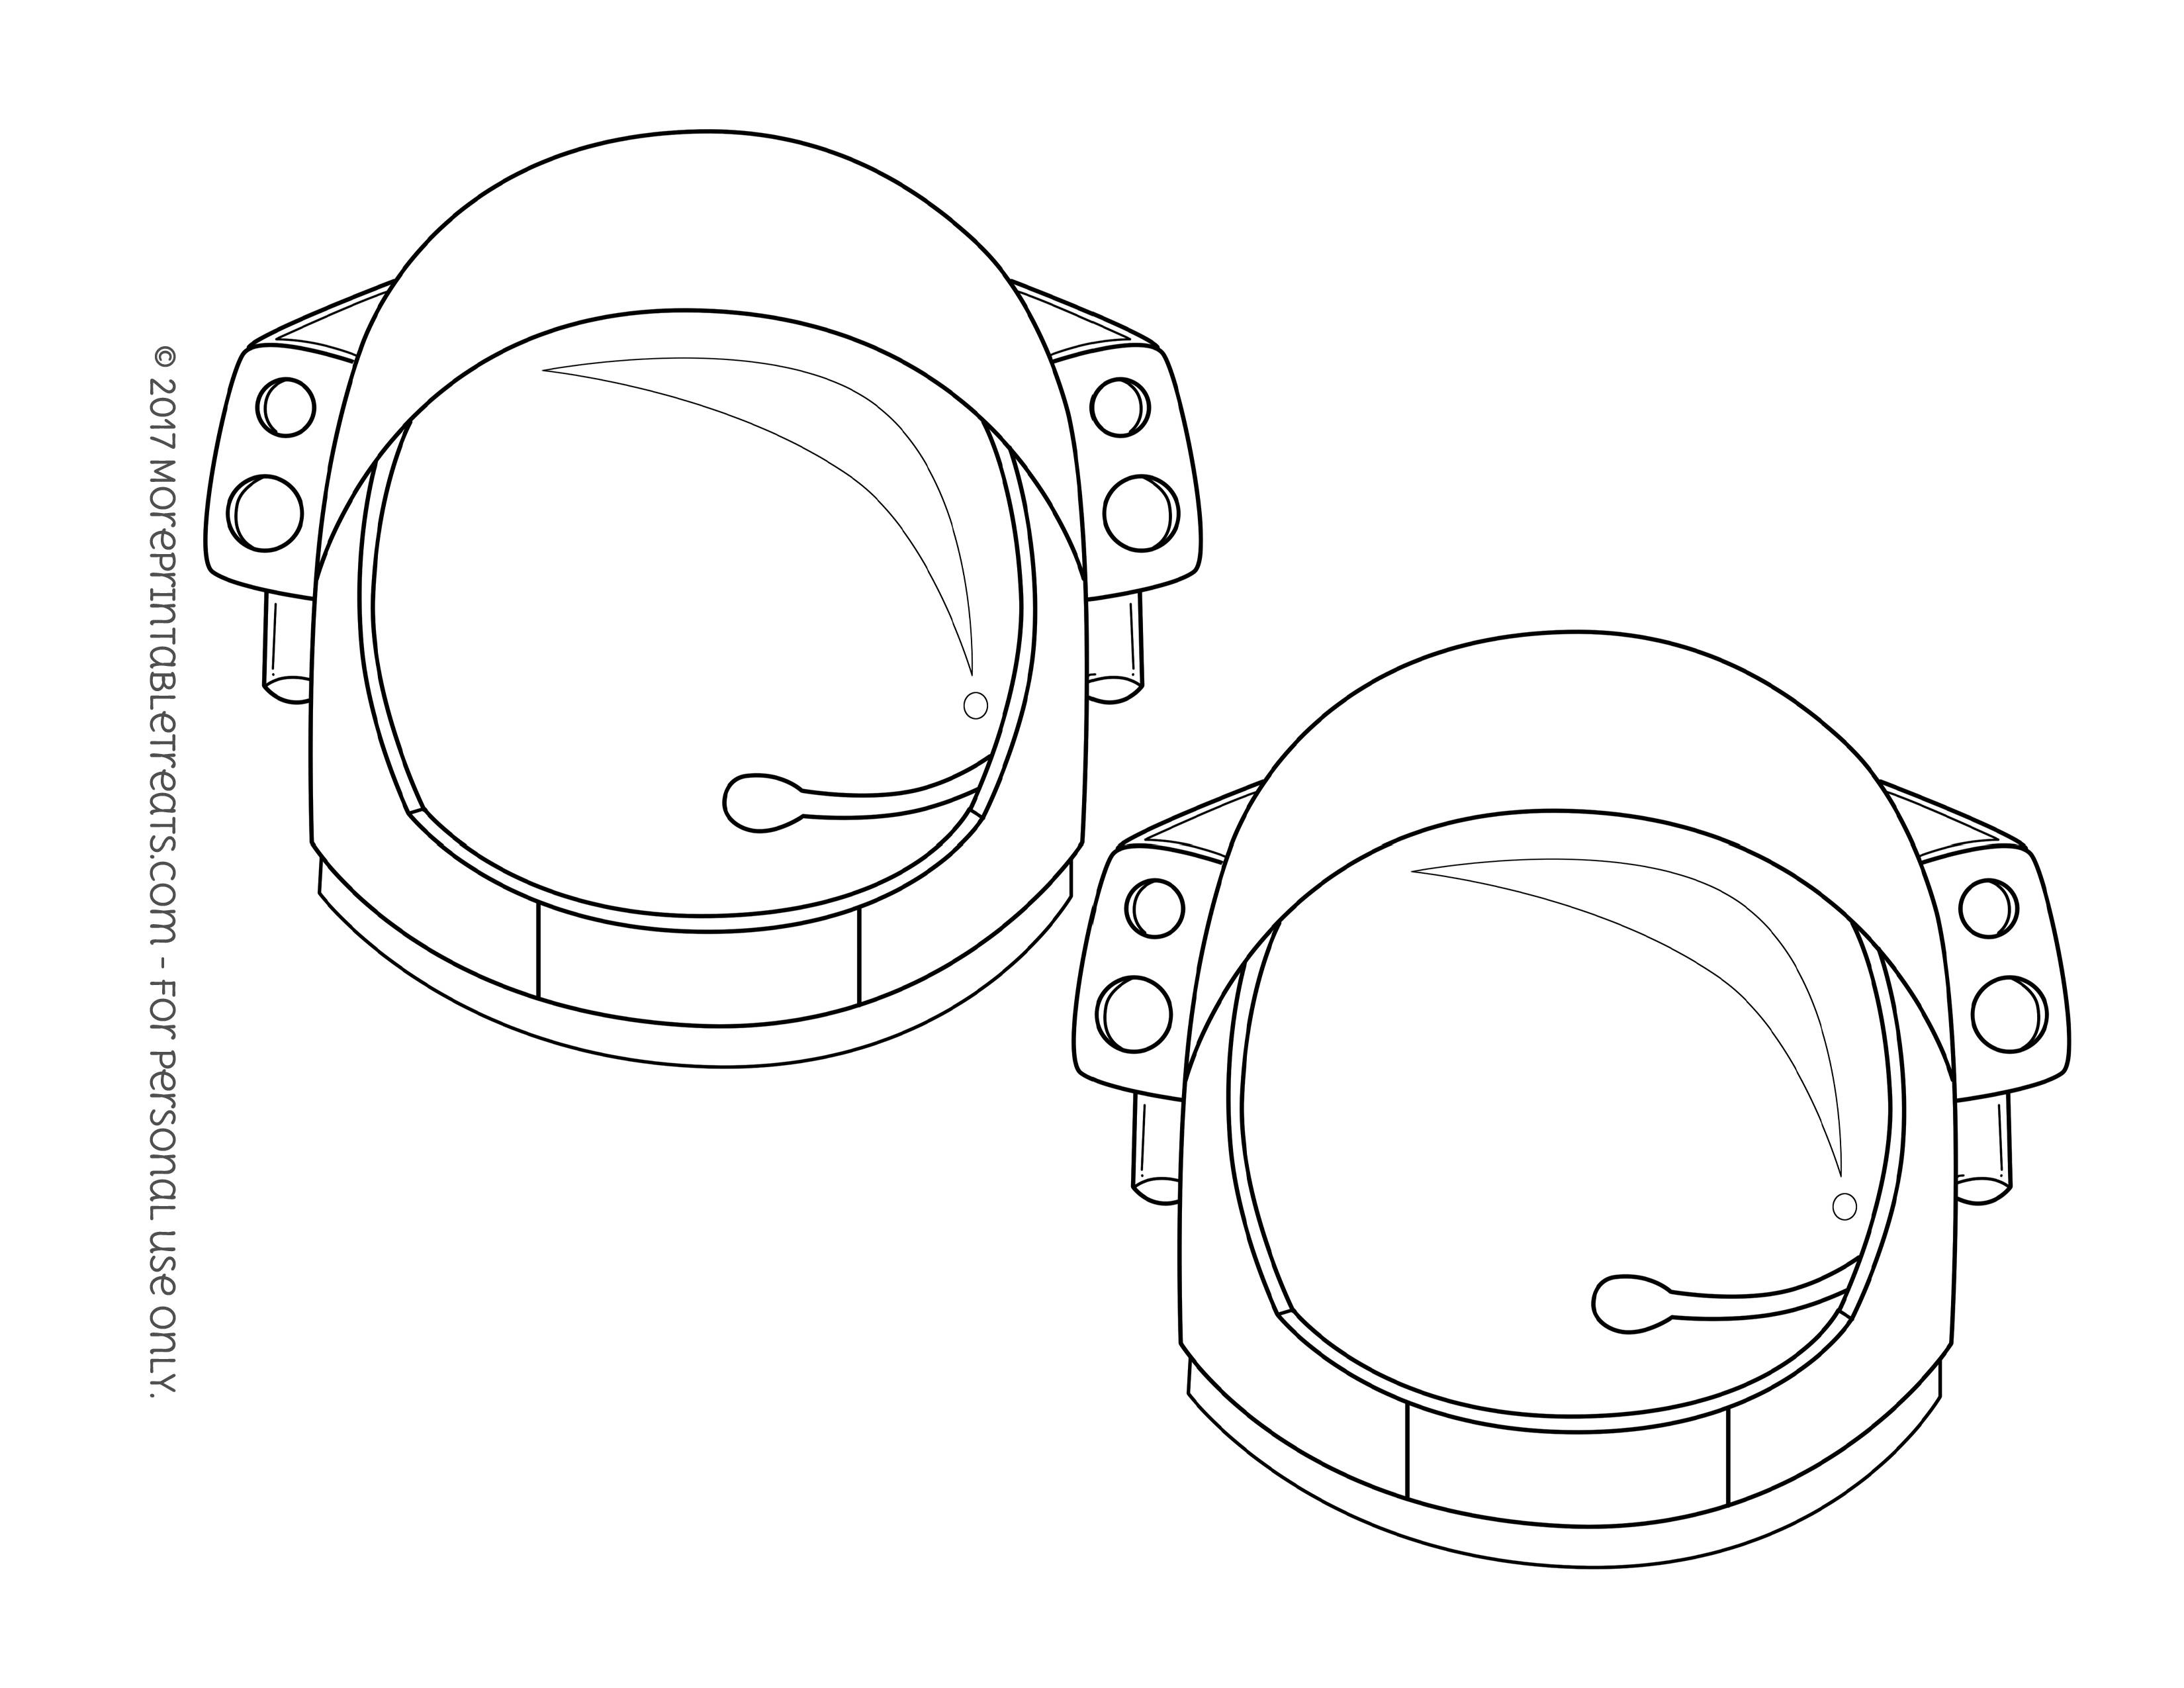 Шаблон шлема космонавта для фотосессии. Космический шлем. Шаблон каски Космонавта. Шлем Космонавта шаблон. Шлем Космонавта чертеж.